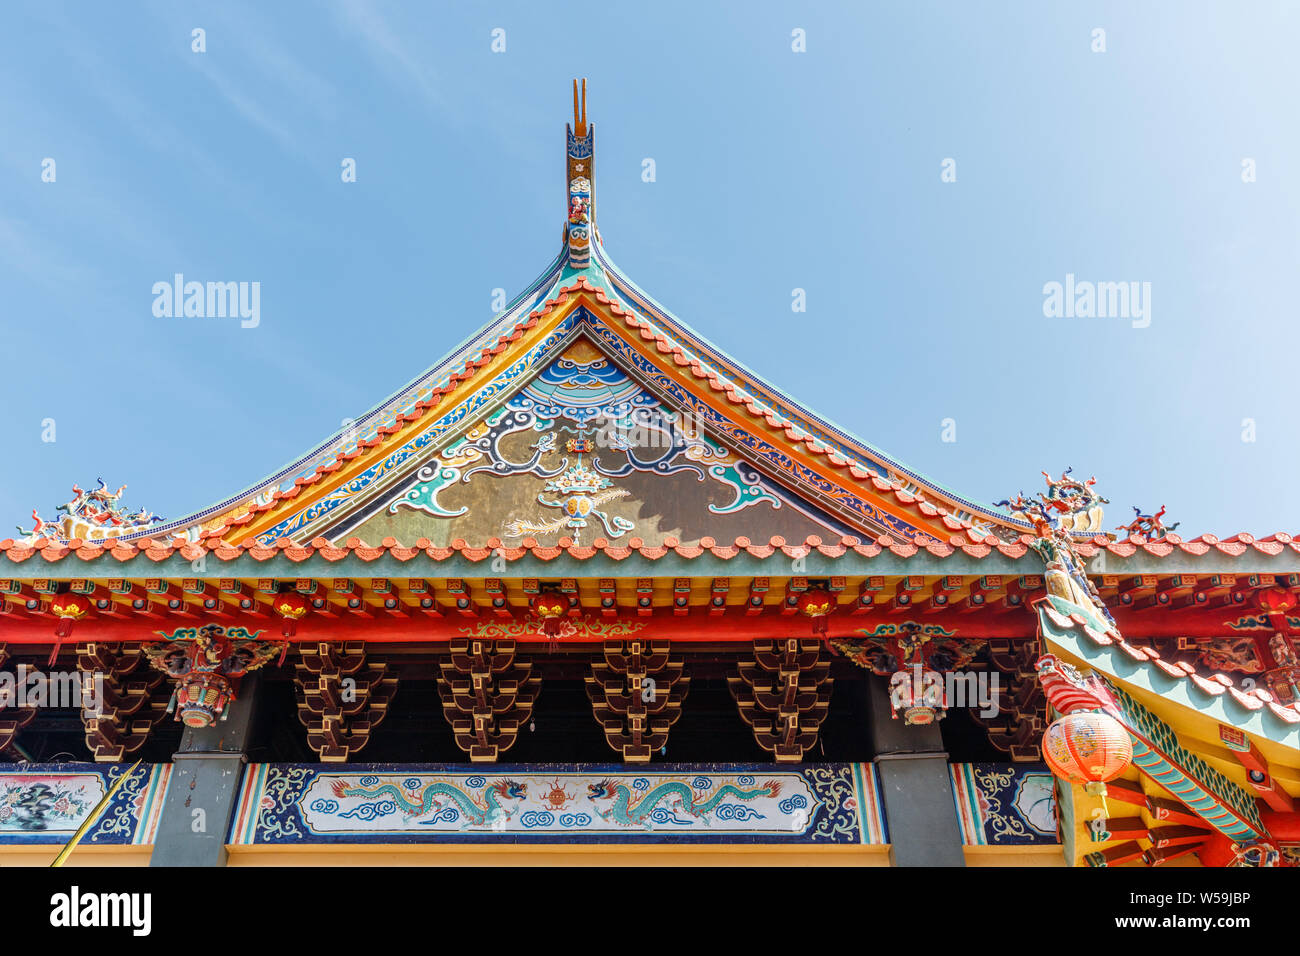 Bunte Dach des Vihara Satya Dharma, chinesischen buddhistischen Tempel, ehrt Tianhou Mazu, Chinesischen Meer Göttin. Hafen Benoa, Bali, Indonesien. Stockfoto